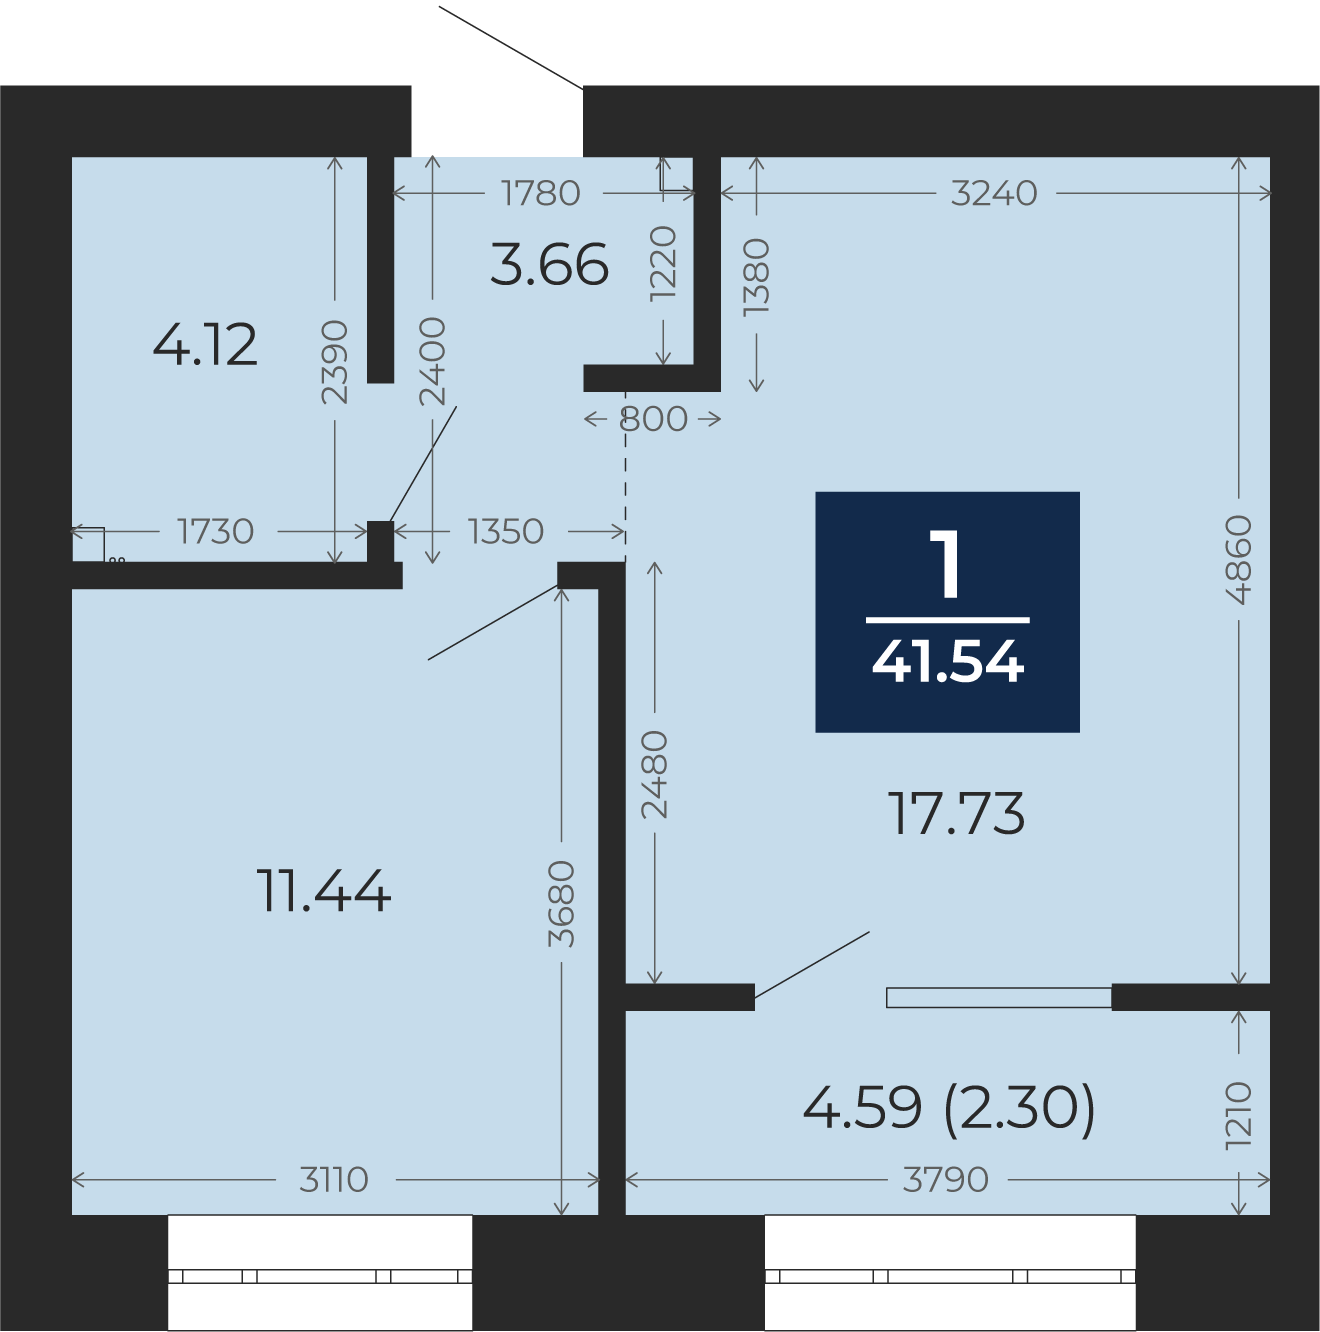 Квартира № 97, 1-комнатная, 41.54 кв. м, 3 этаж